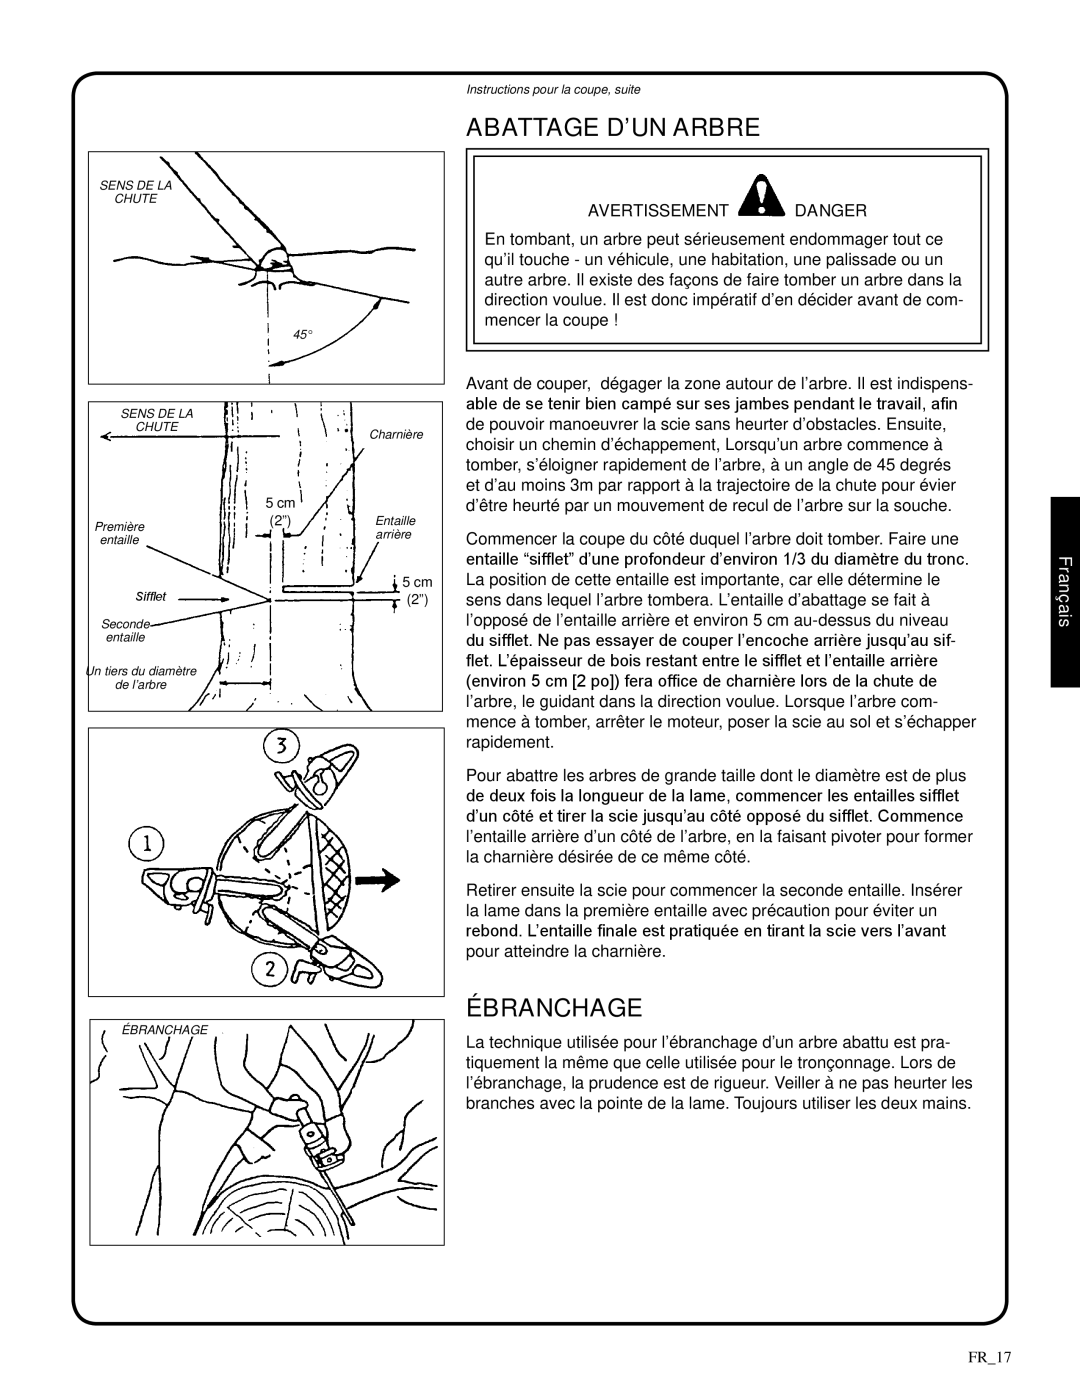 Shindaiwa 326T, 82085 manual Abattage D’Un Arbre, Ébranchage, avertissement danger, Français, FR_17 